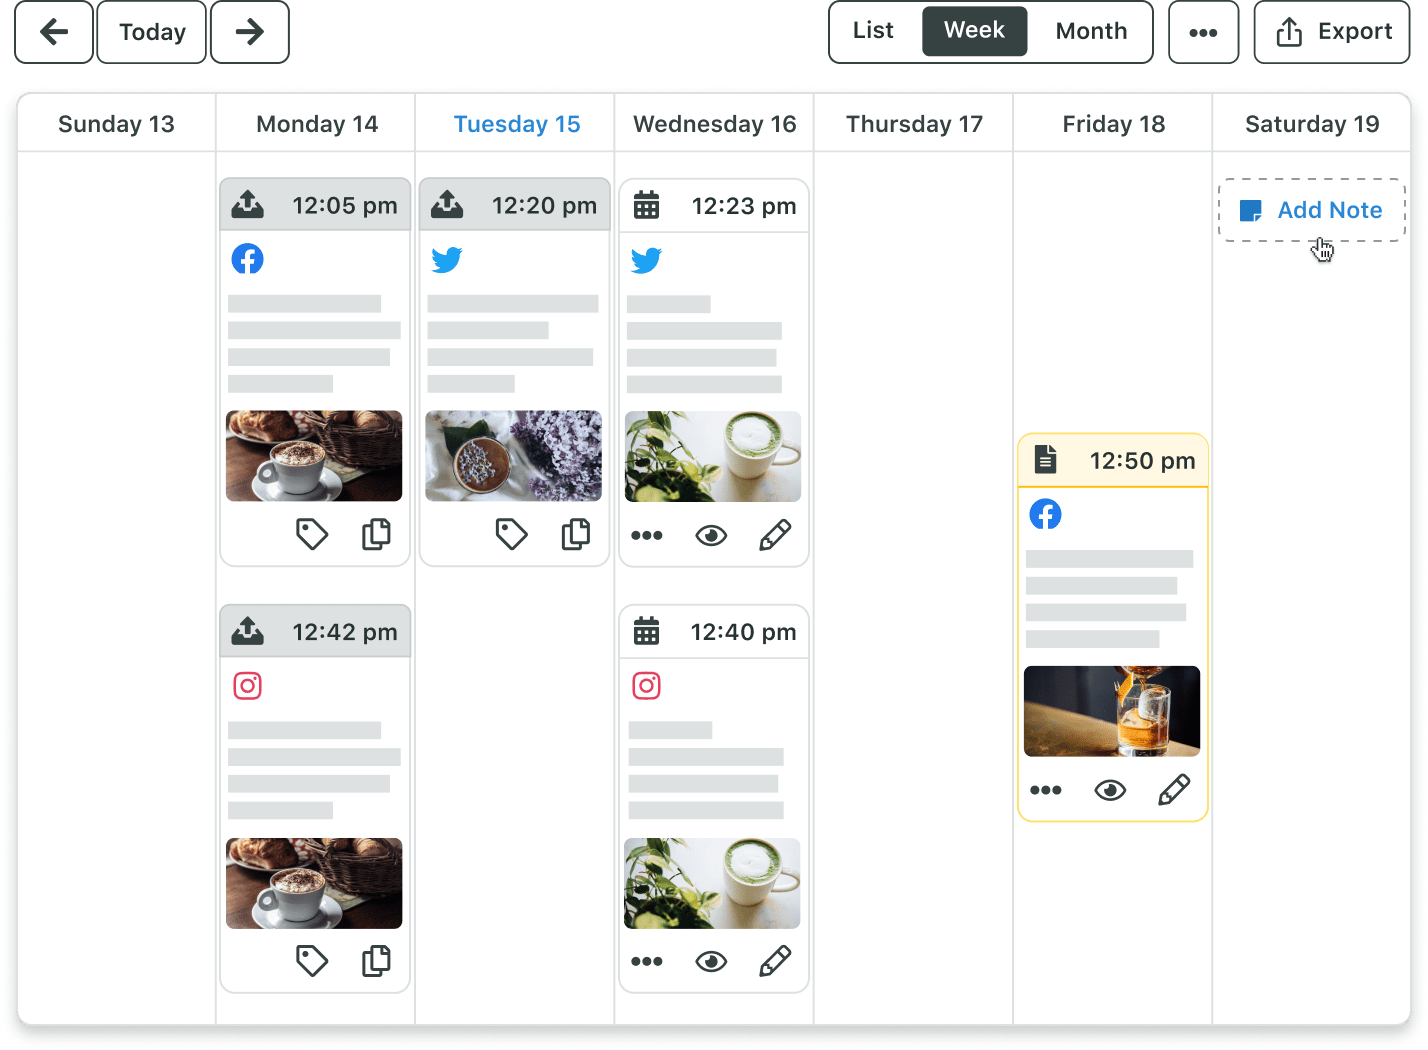 La vista de la semana del calendario de publicación de Sprout muestra una visión general de todas tus publicaciones programadas con opciones para ver, etiquetar y editar el contenido.